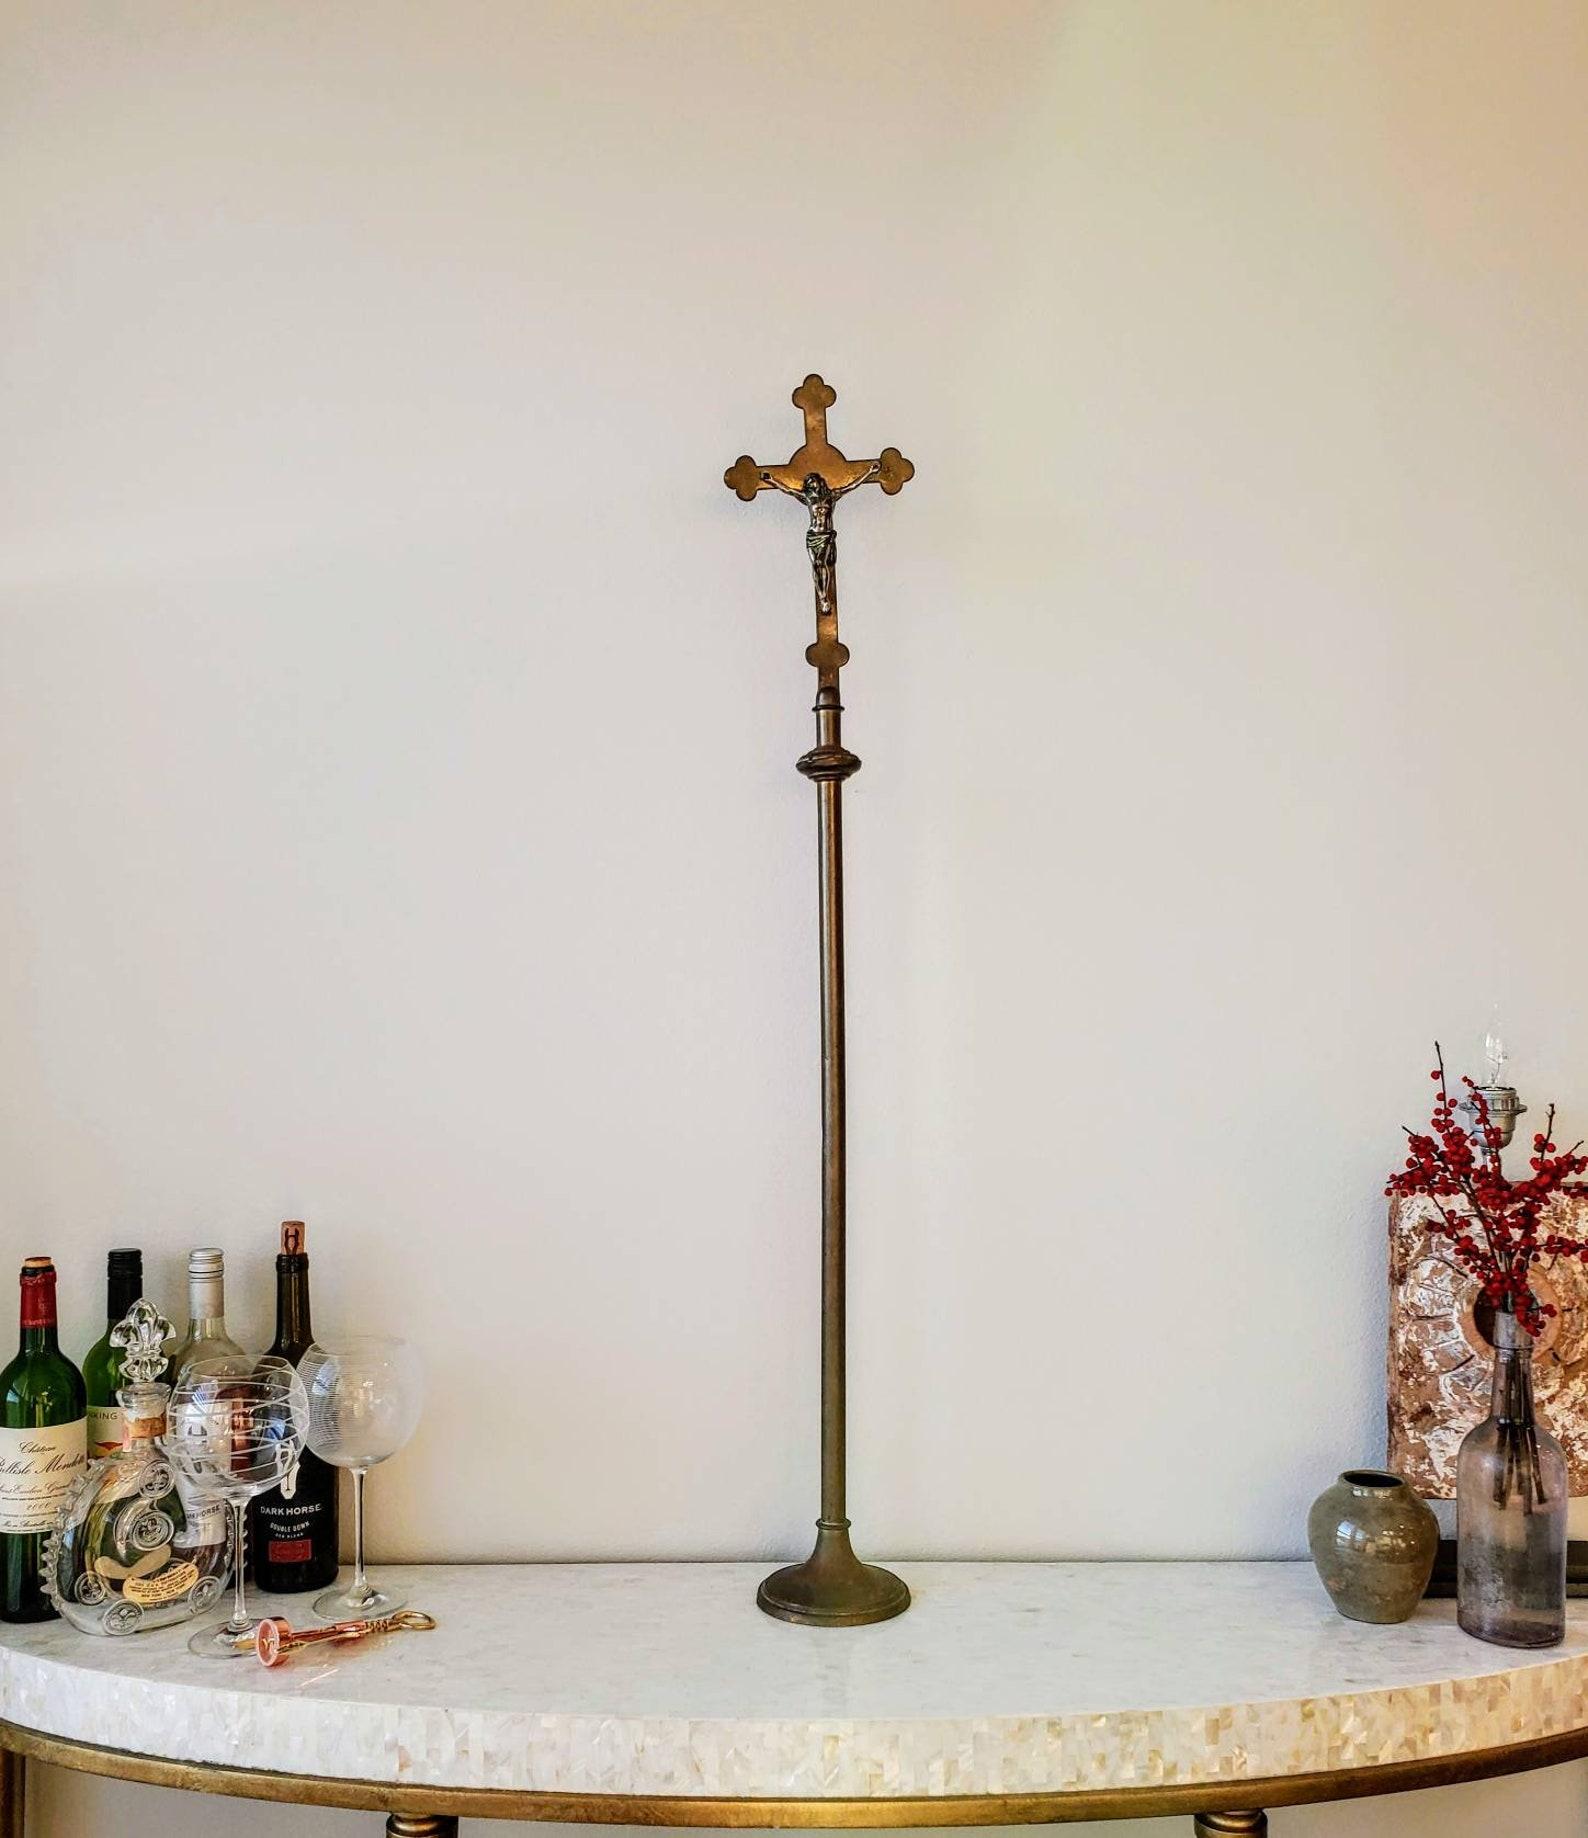 Authentique croix de procession d'église en laiton antique - crucifix d'autel avec une belle patine élégamment vieillie. Née entre la fin du XVIIIe et le XIXe siècle, cette figure de Corpus Christi (corps du Christ) en argent sculpté, richement